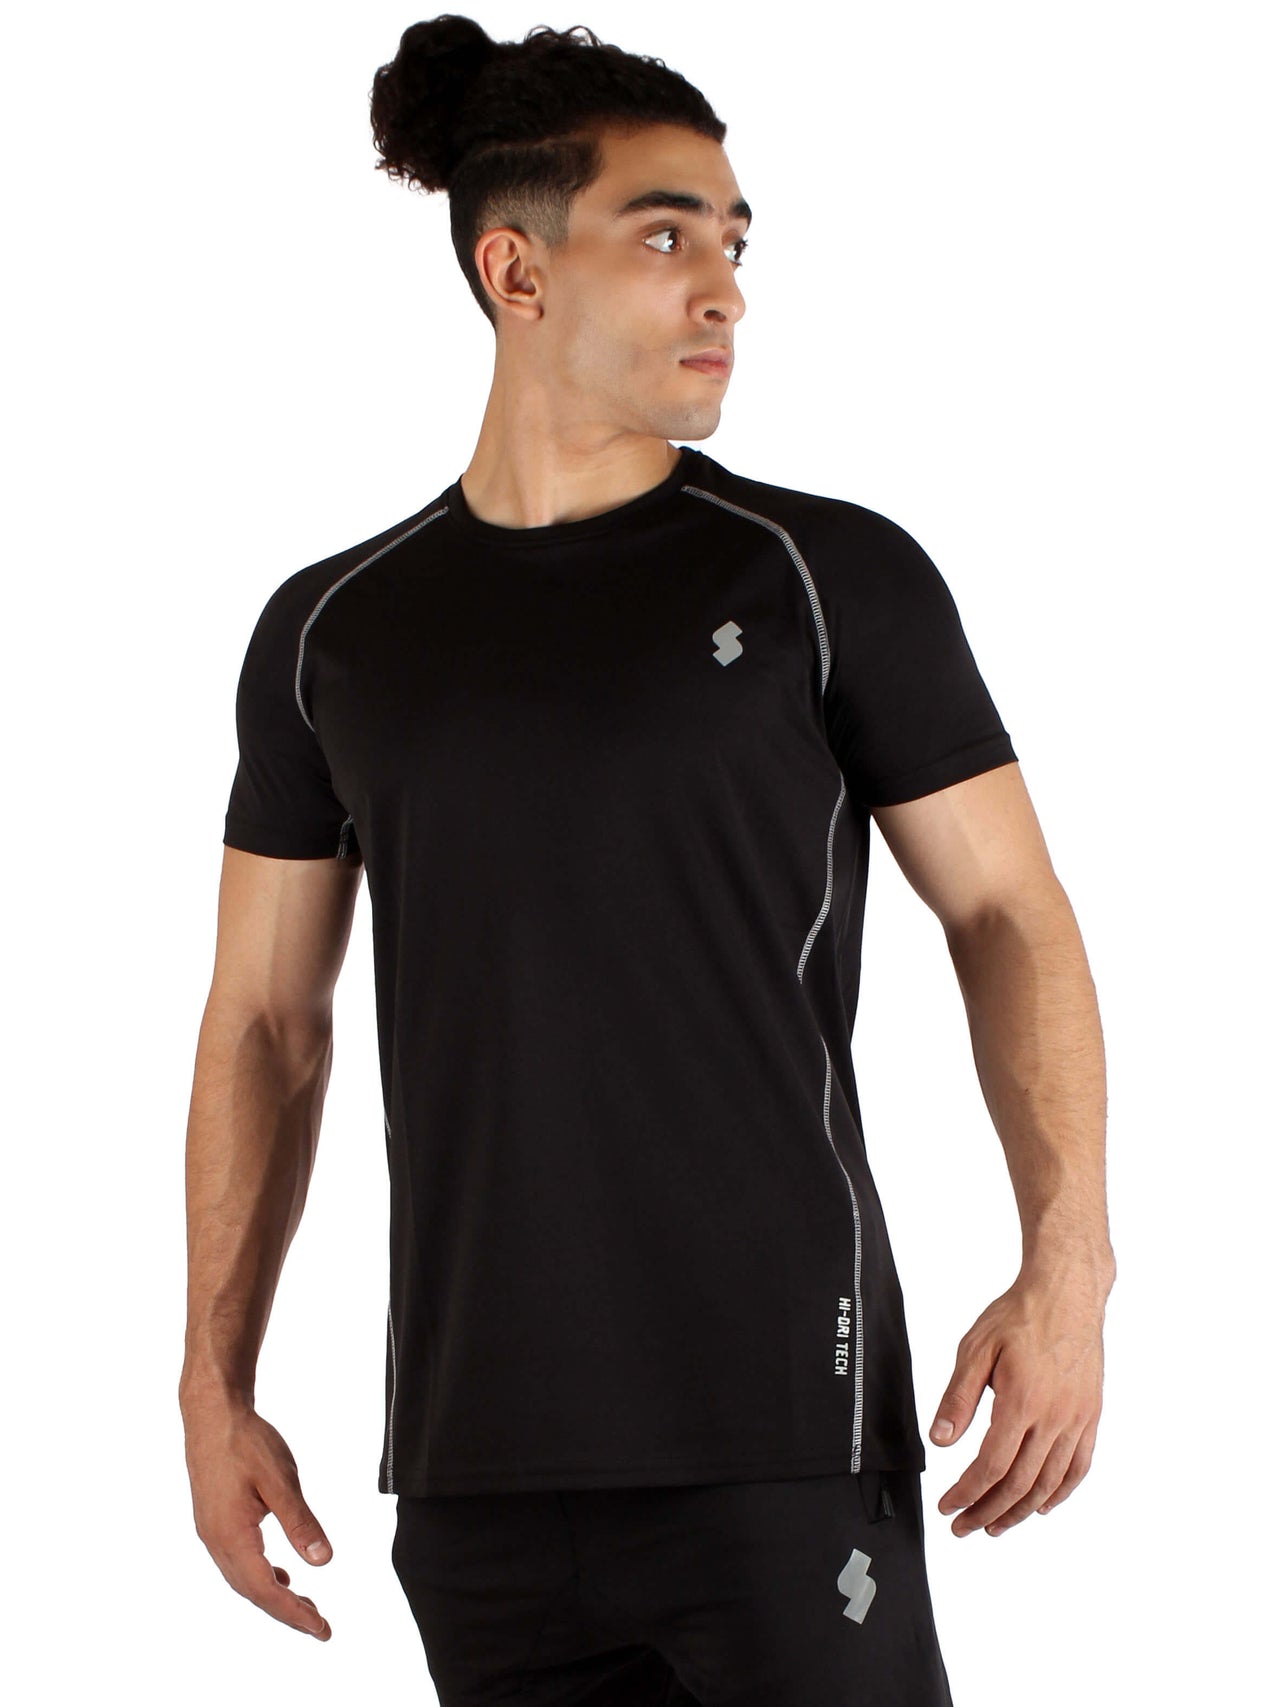 T18 Hi-Dri Raglan T-Shirt - Black